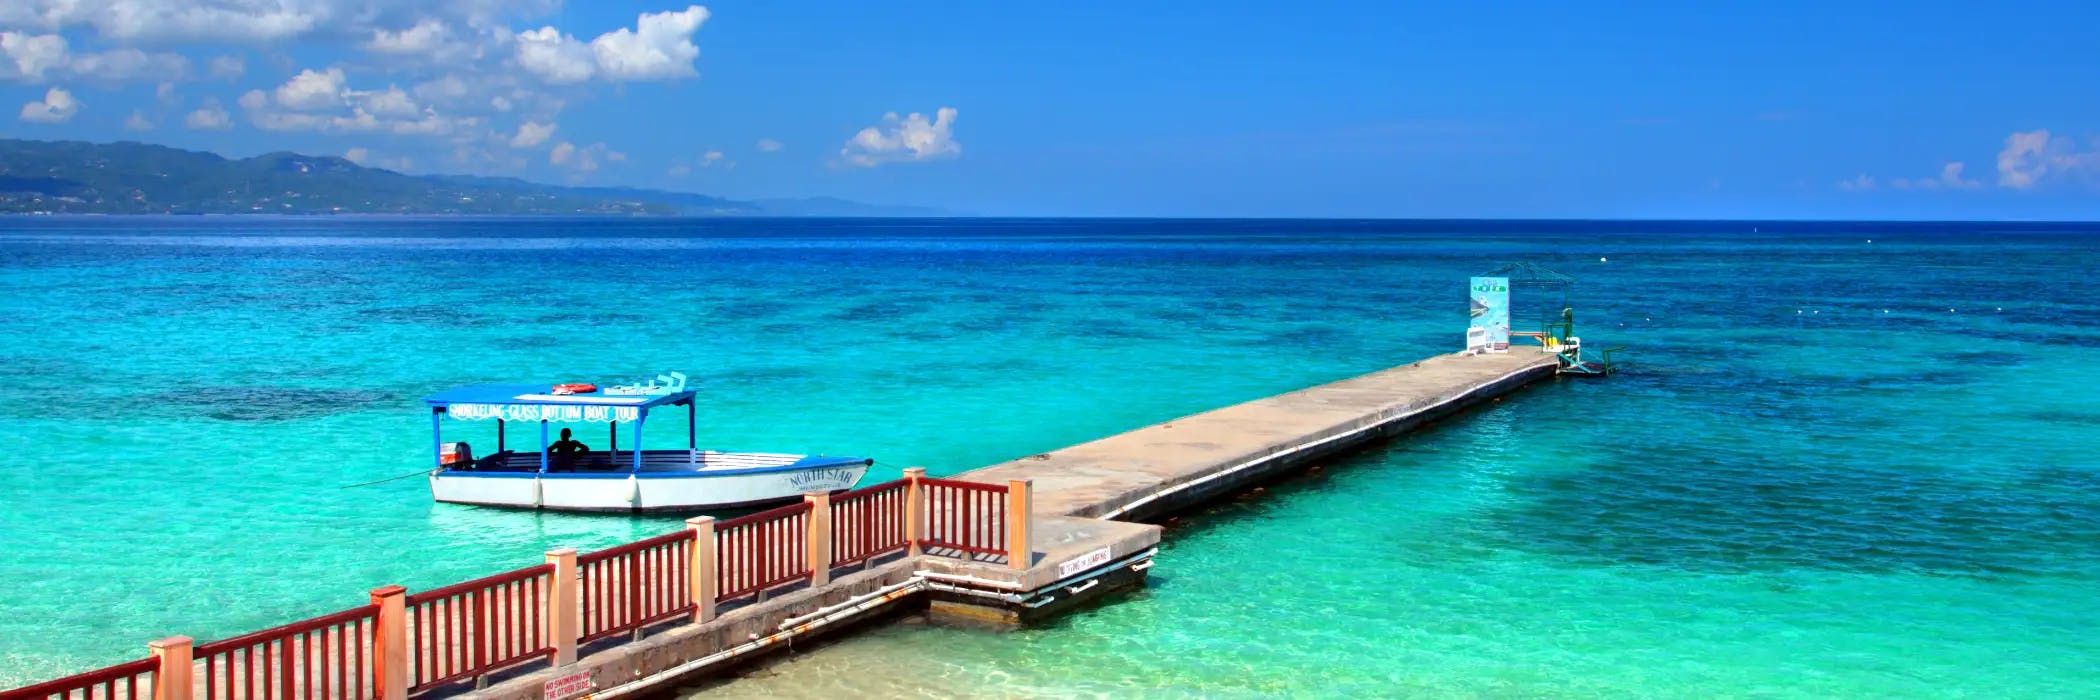 Montego Bay, Jamaica - All Inclusive Holidays To Jamaica